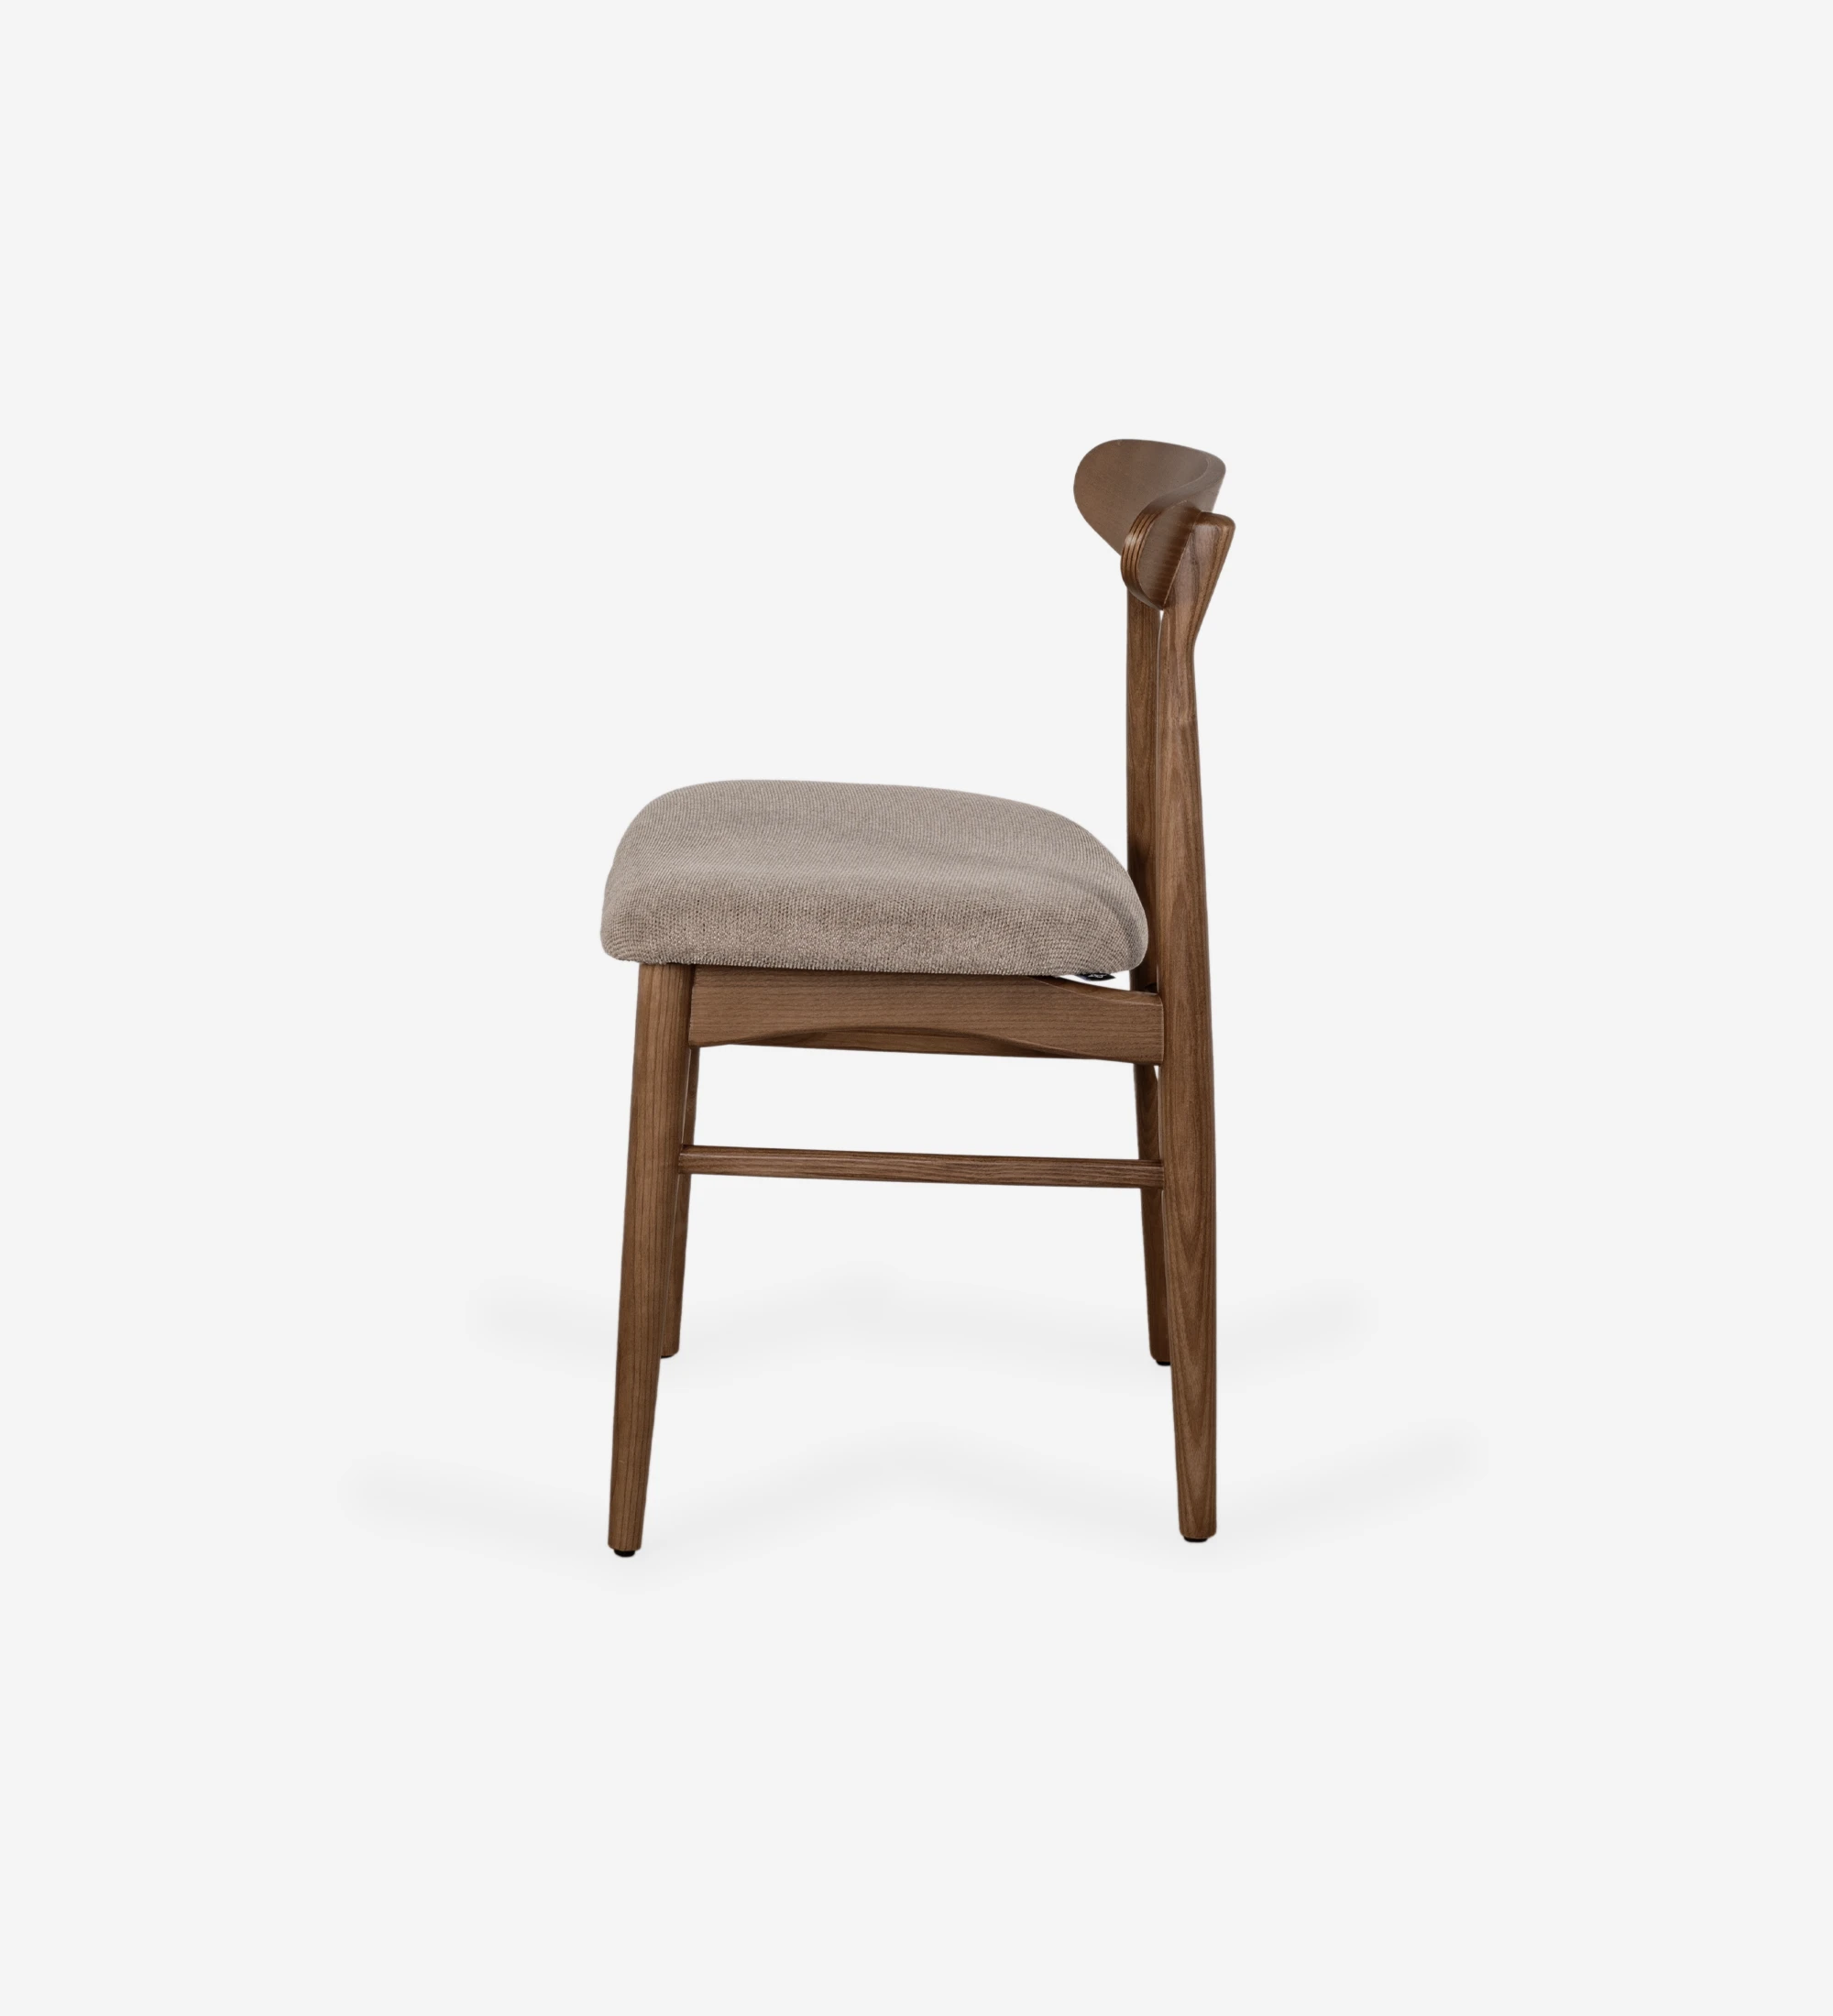 Chaise avec structure en bois de noyer et assise rembourrée en tissu.